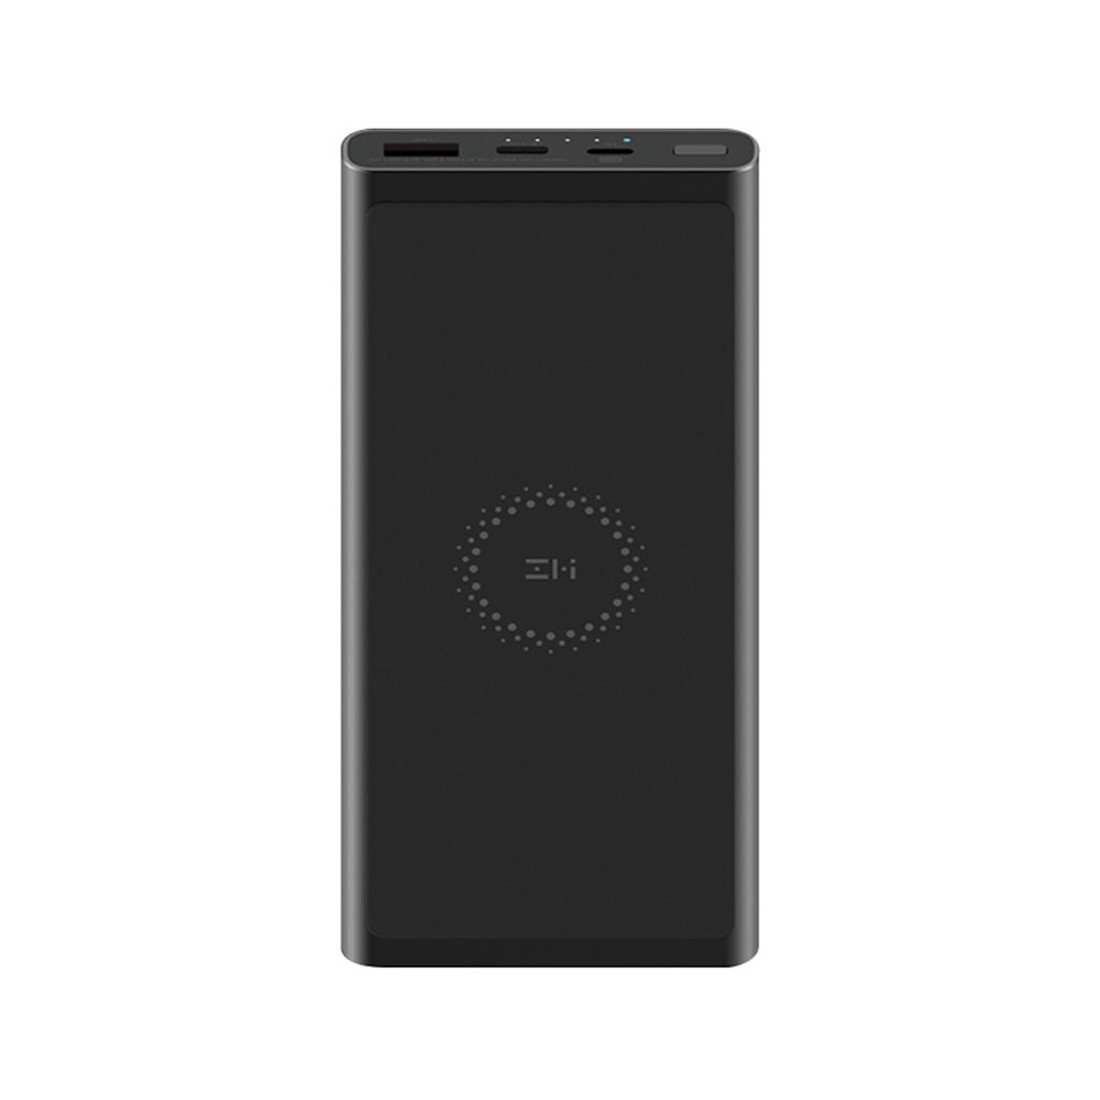 Портативное зарядное устройство Xiaomi ZMi Power Bank 10000mAh (WPB100, Black), фото 1